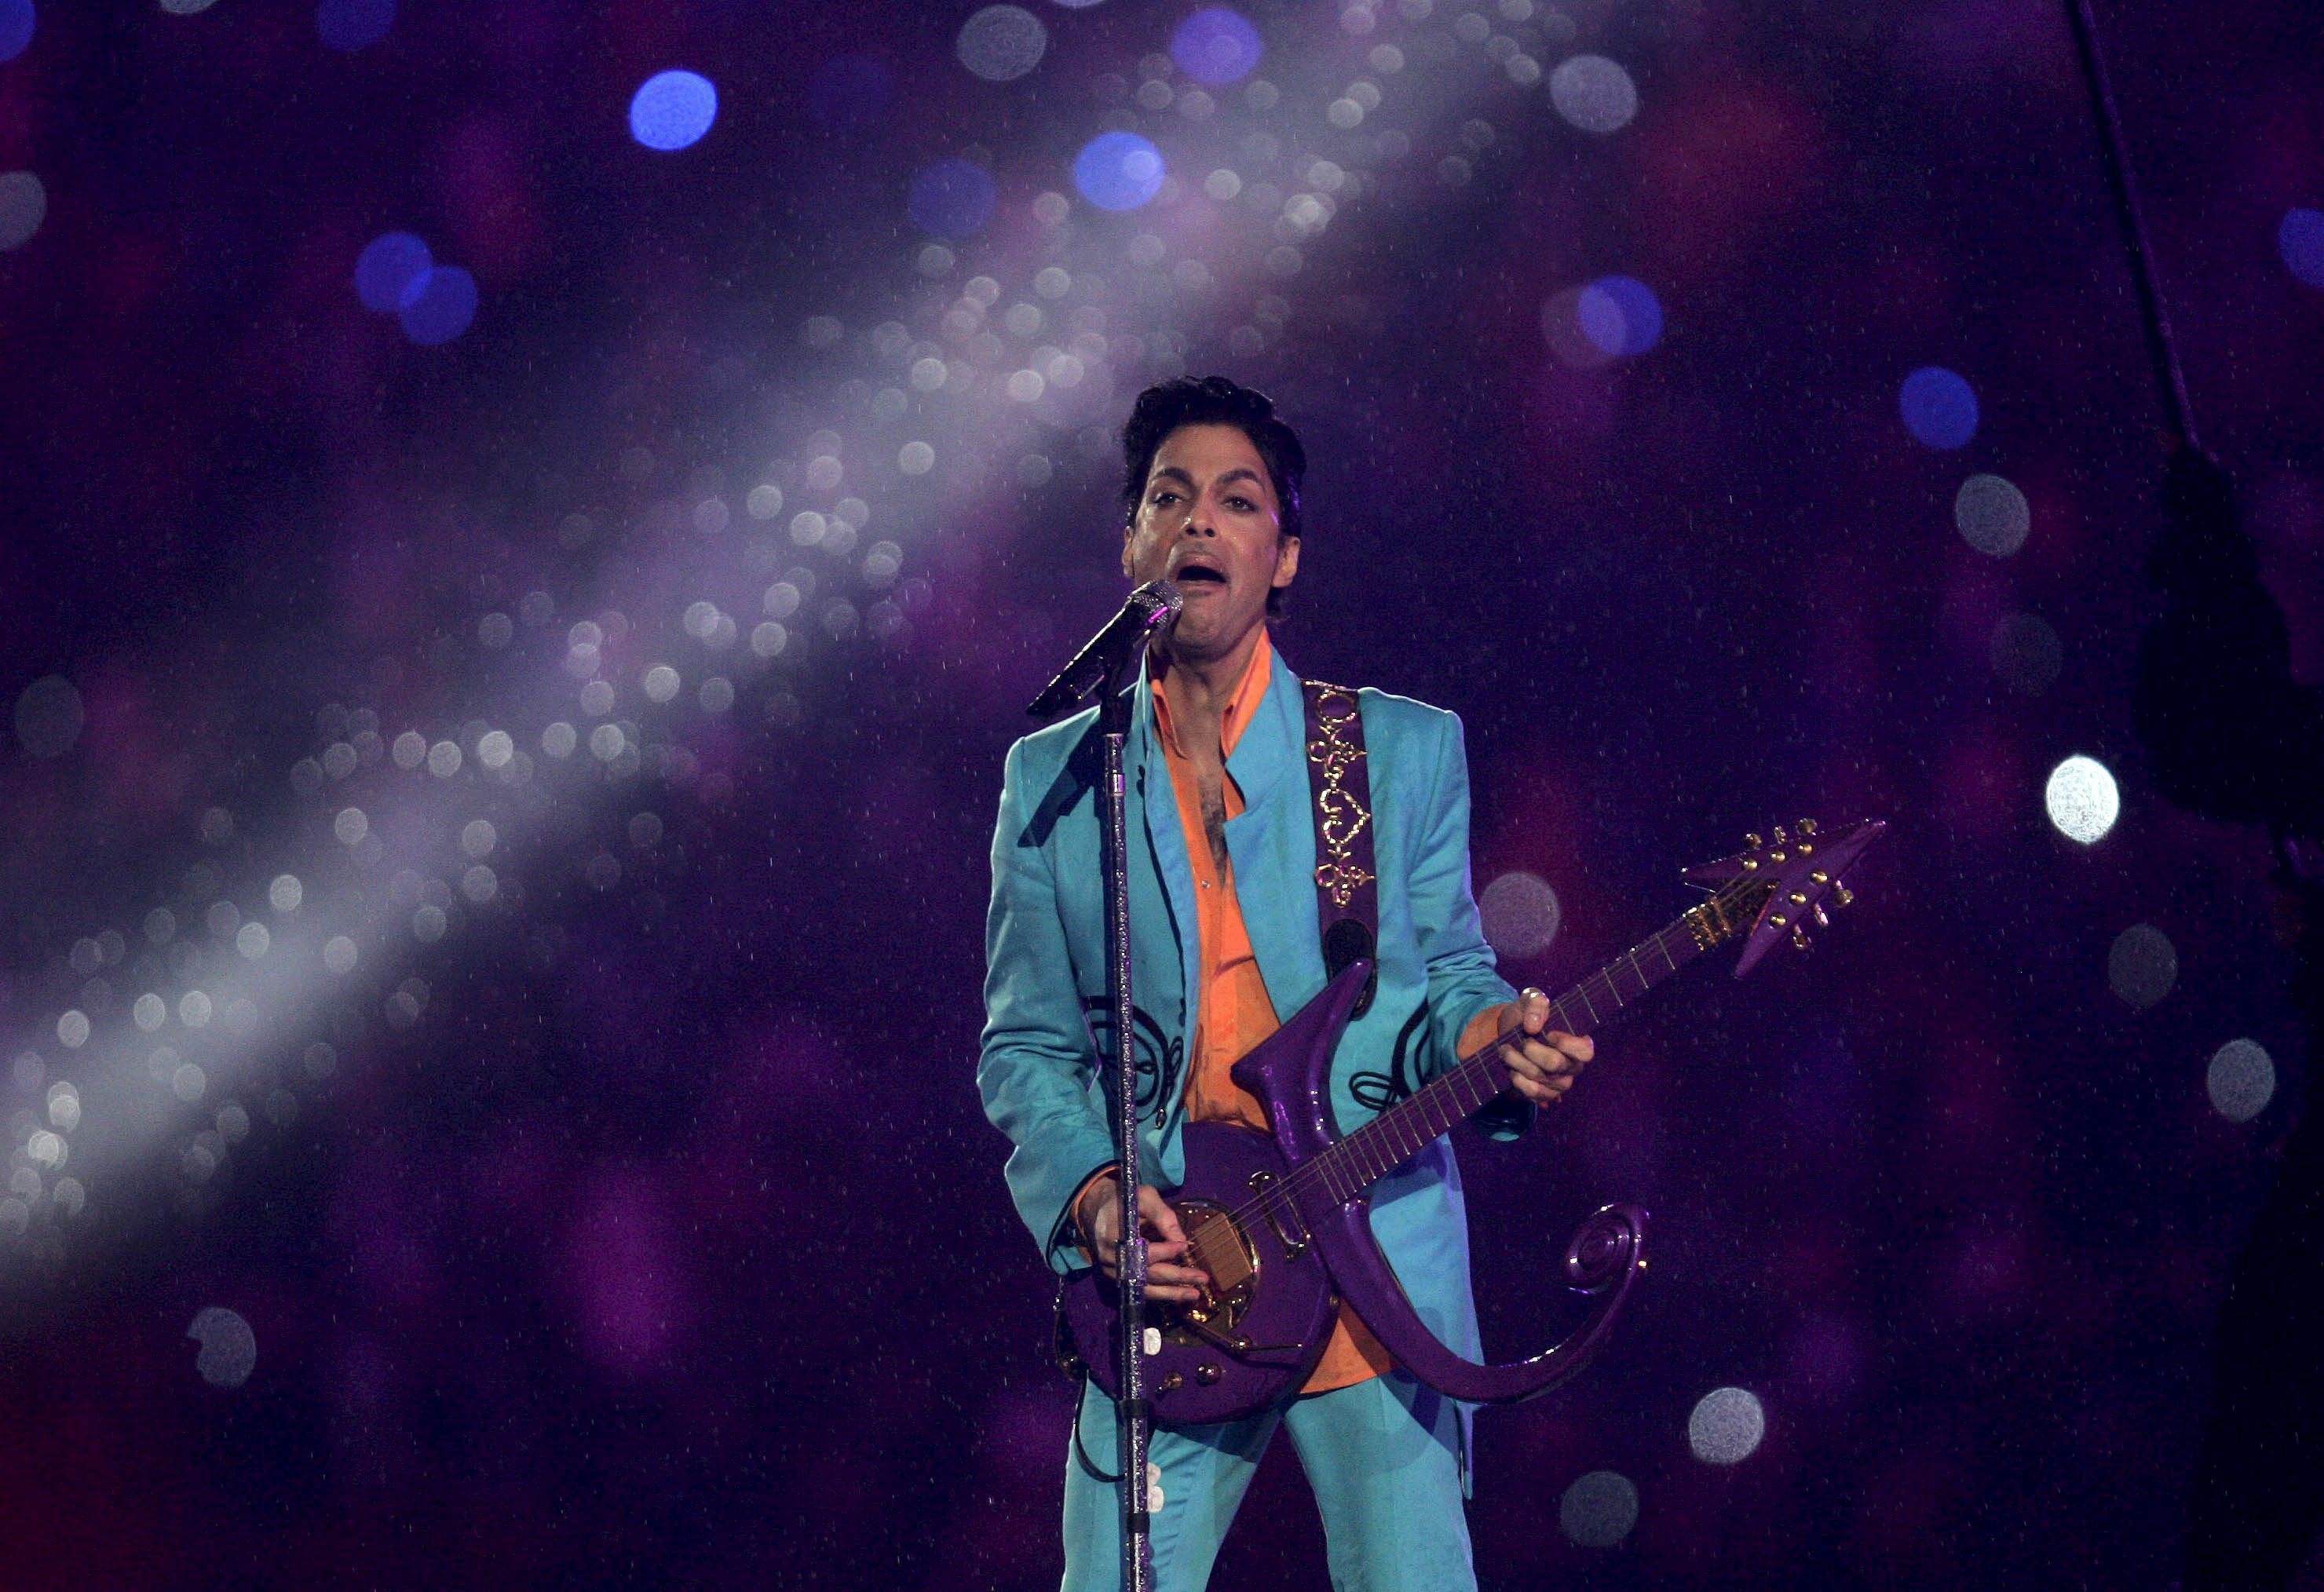 Prince falleció el 16 de abril del año 2016 a causa de una sobredosis accidental con fentanilo (EFE)